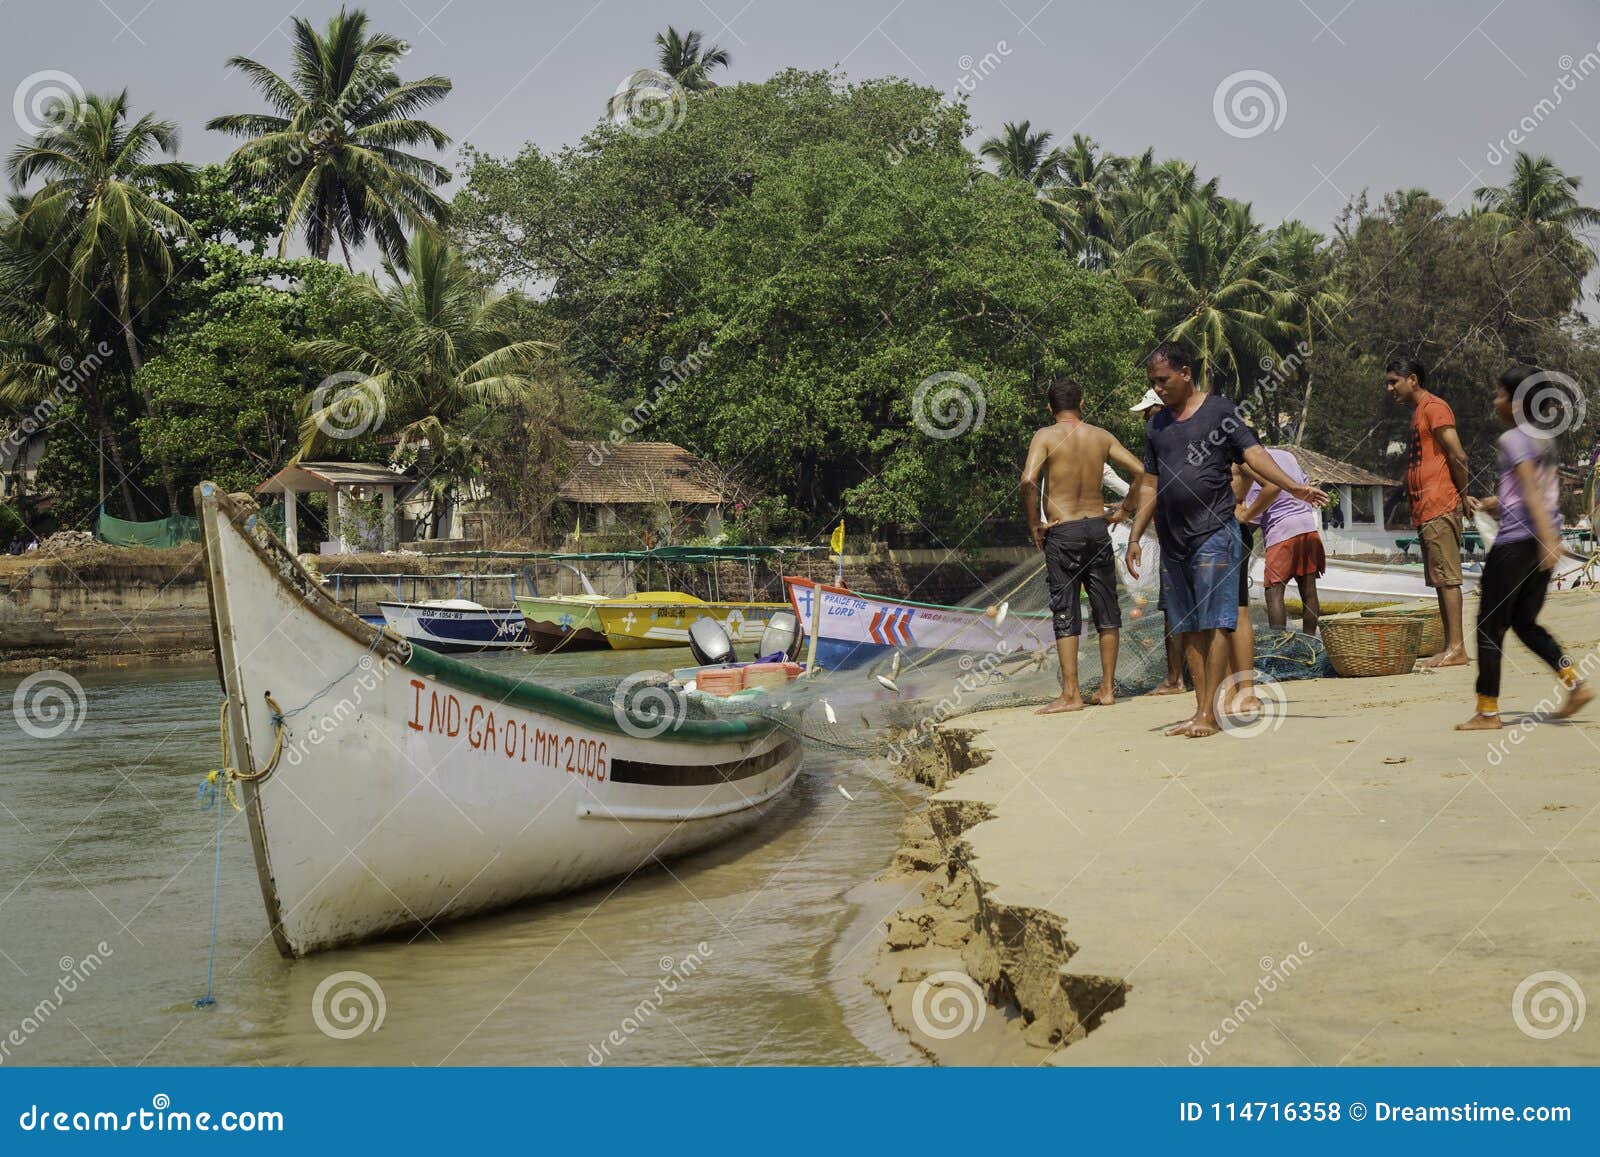 Fishermen Catching Big Fish in Net Community Fishing in Asia Hd